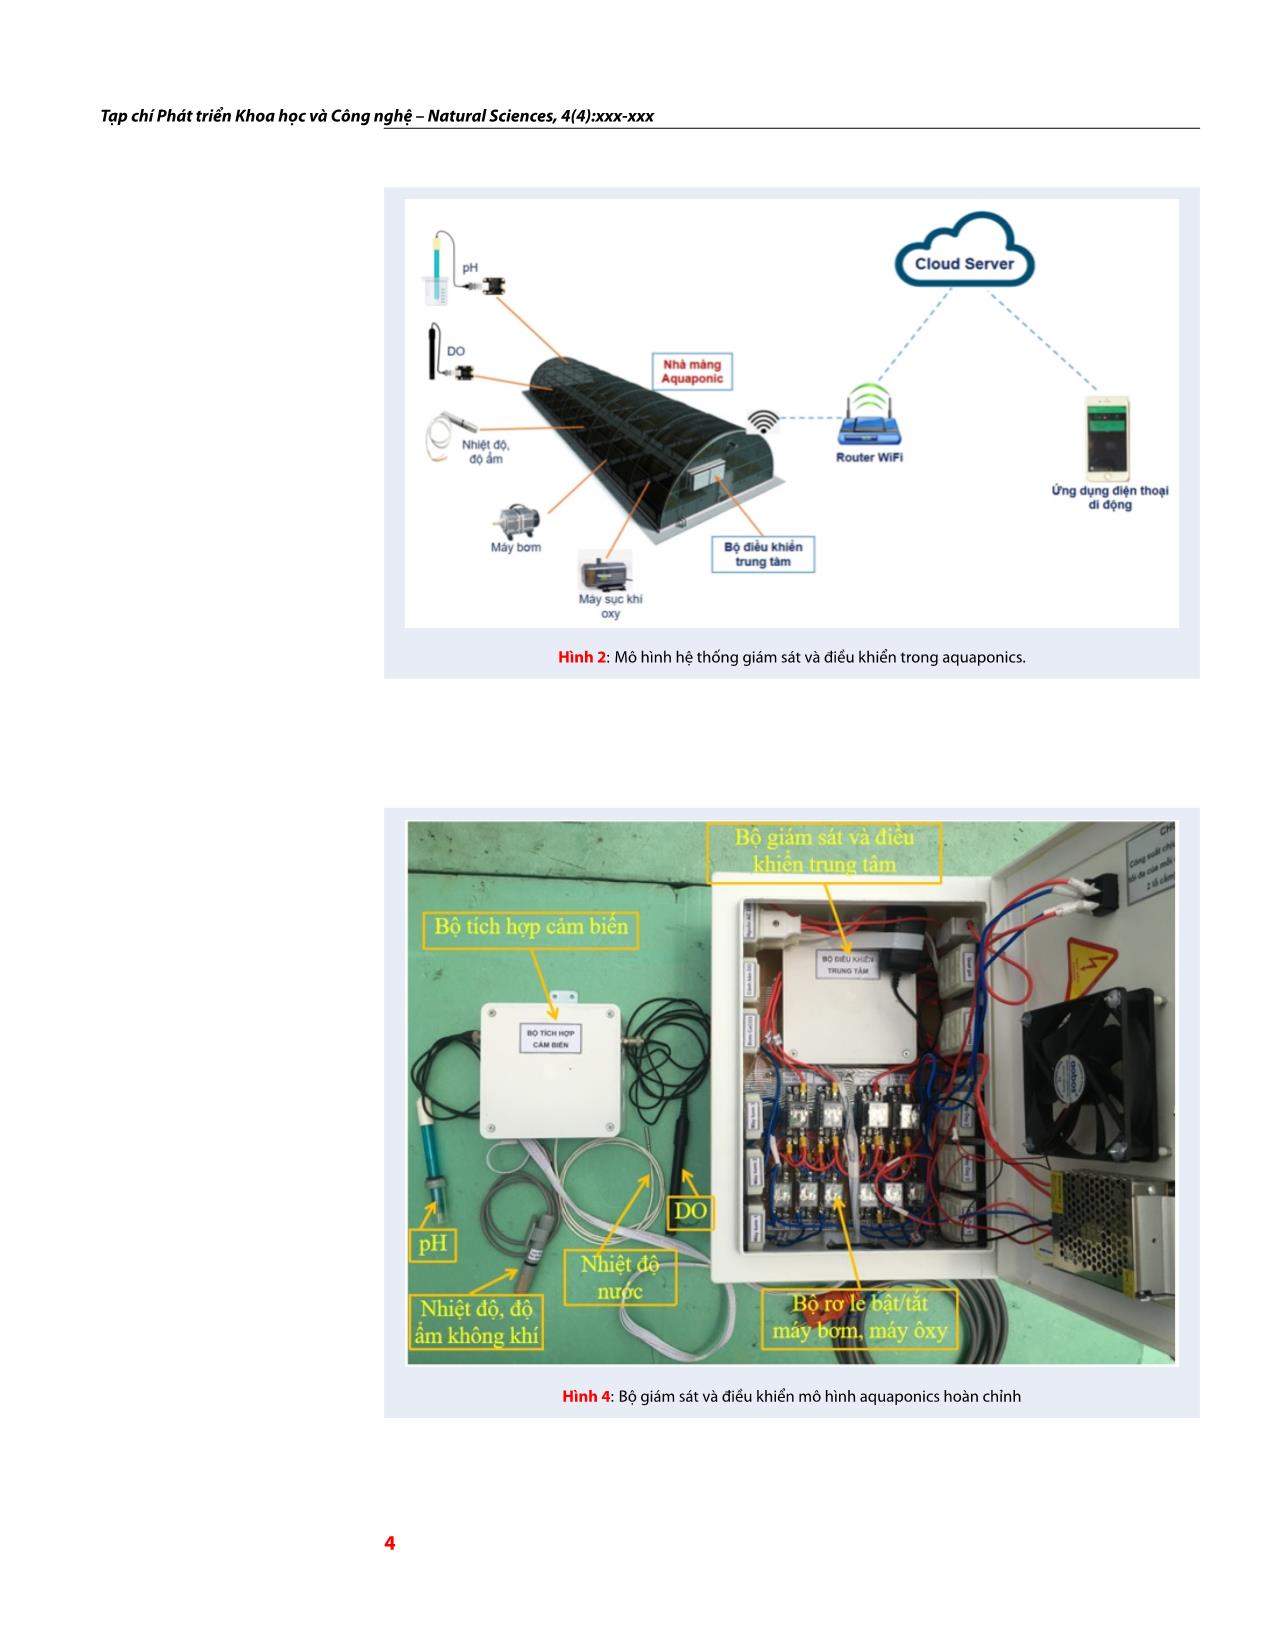 Thiết kế hệ thống giám sát và điều khiển mô hình Aquaponics dựa trên công nghệ IoT trang 4